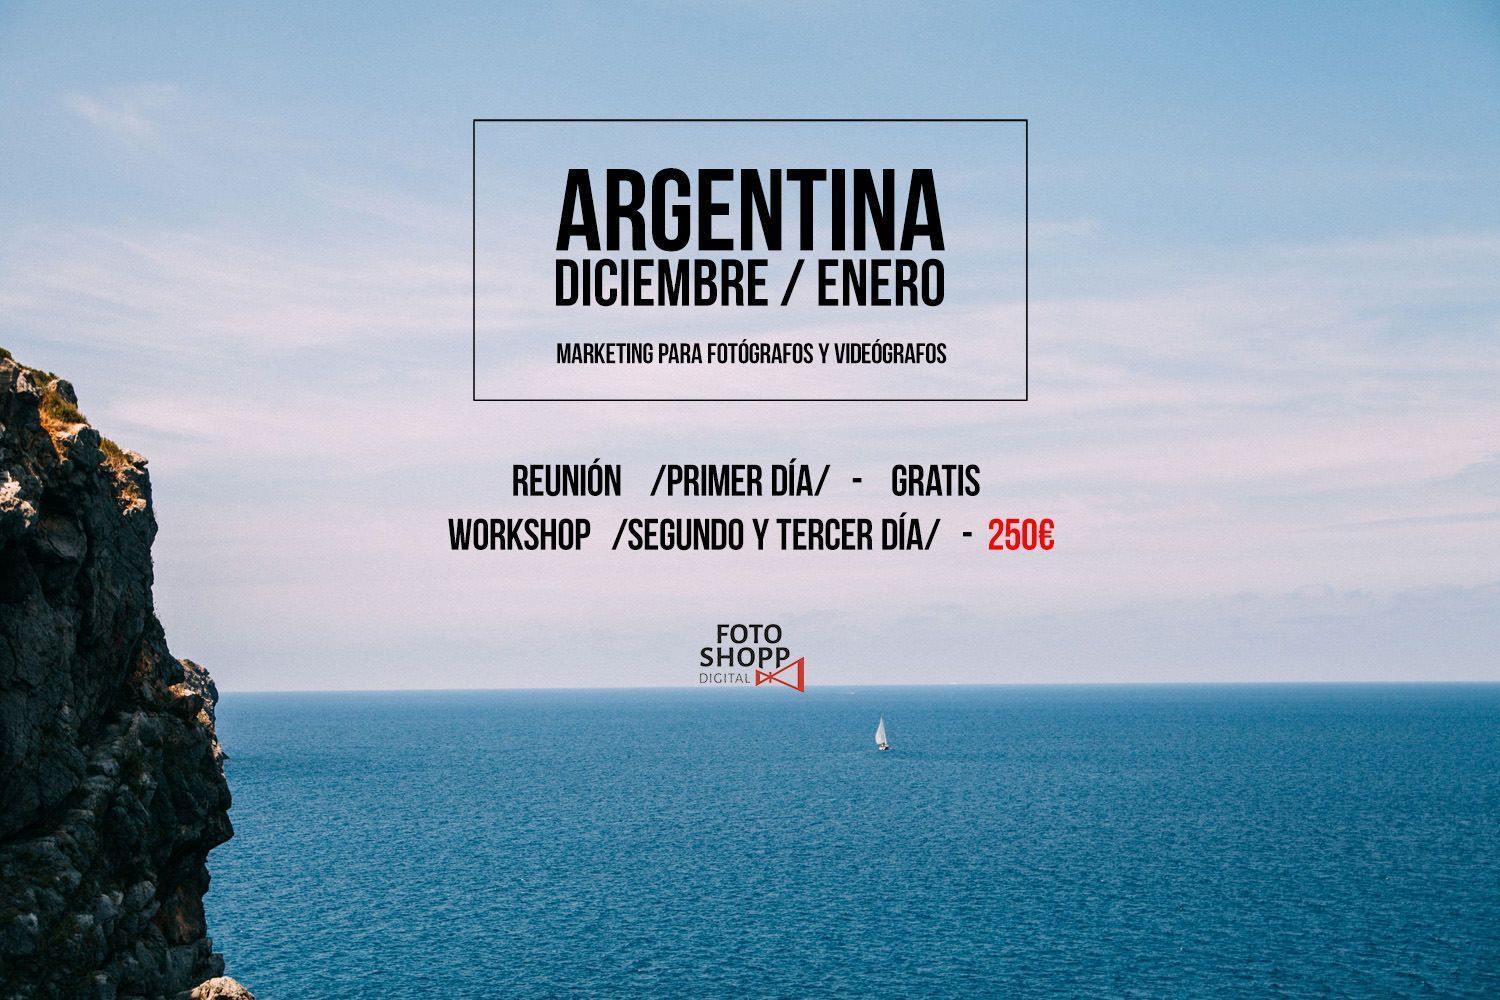 Workshop de Marketing para fotografos y videografos en Argentina